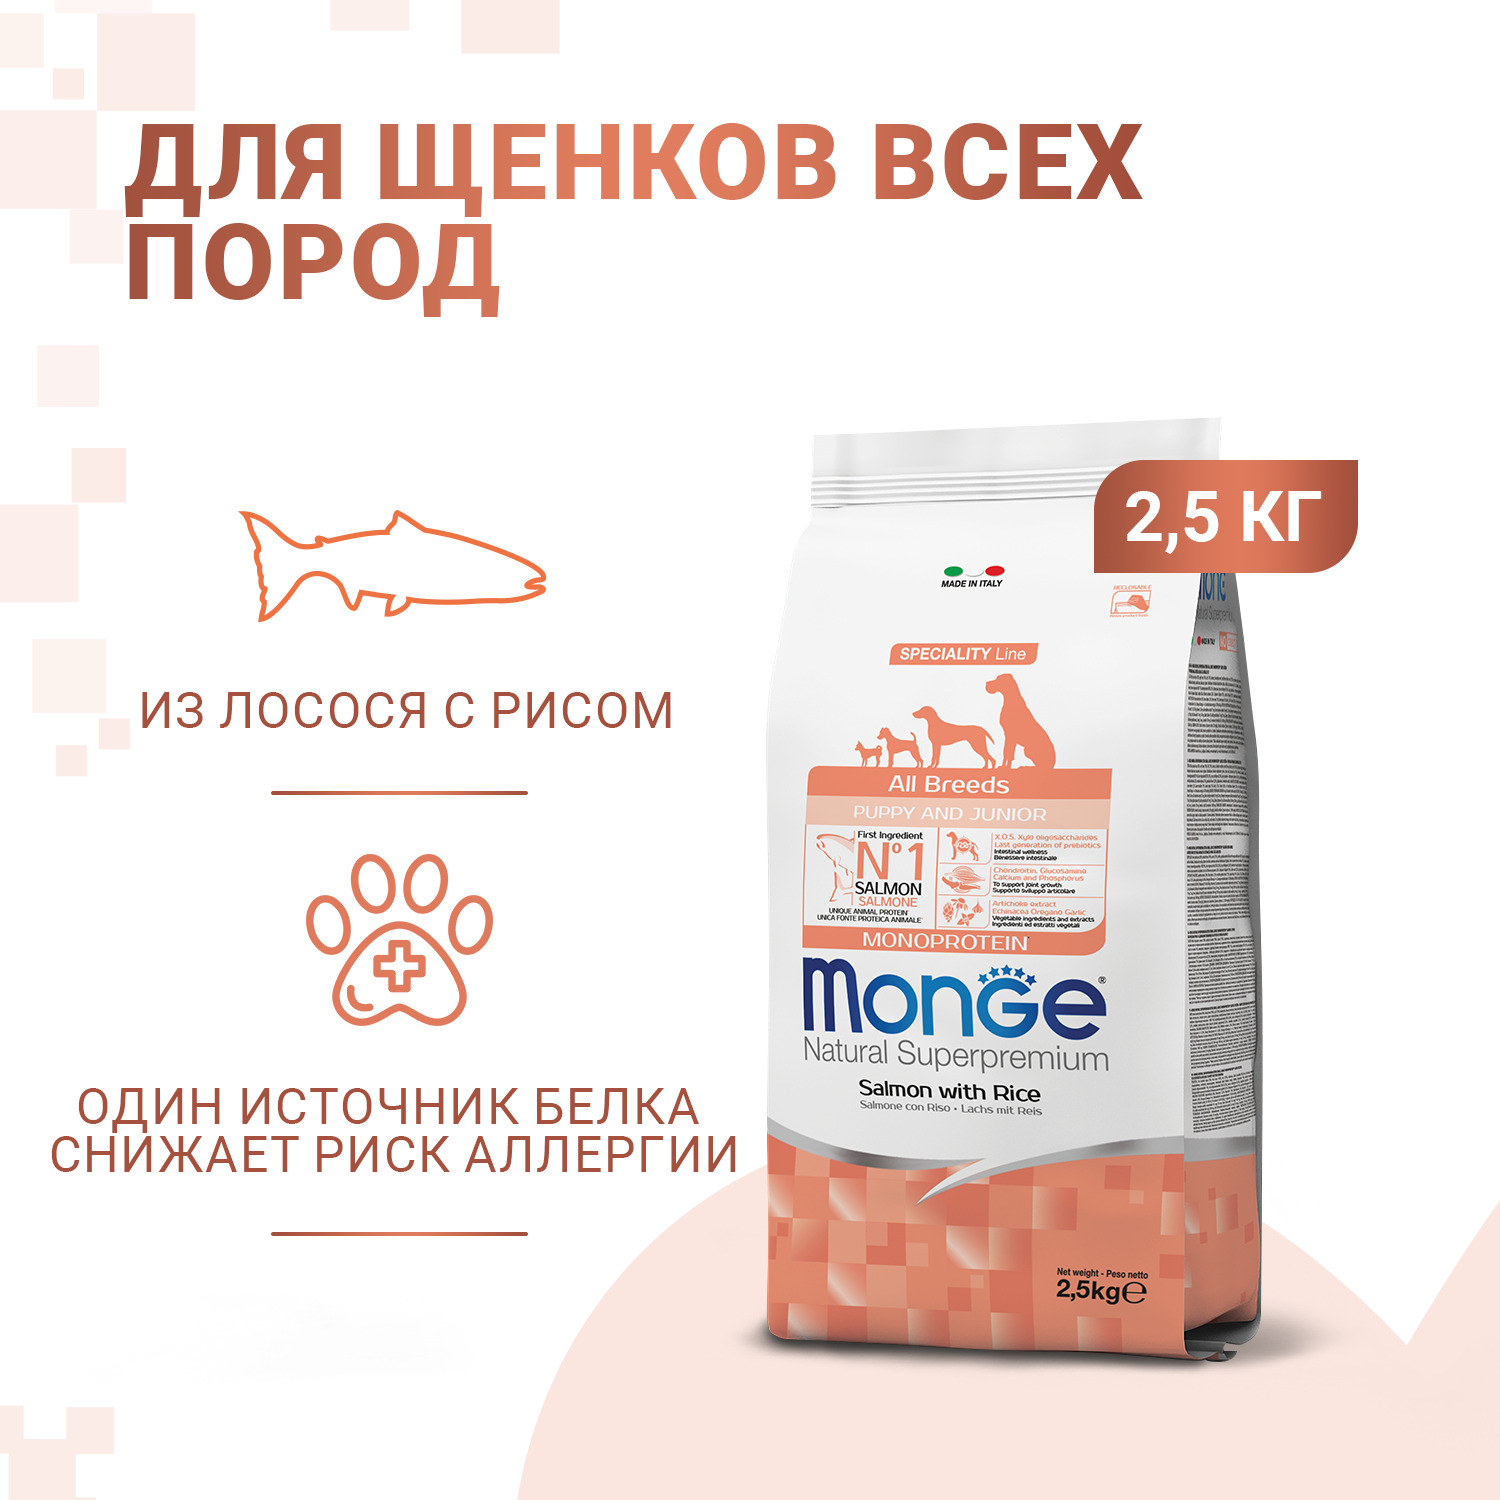 Сухой корм Monge Dog Speciality Line Monoprotein Puppy&Junior корм для щенков всех пород, из лосося с рисом 2,5 кг